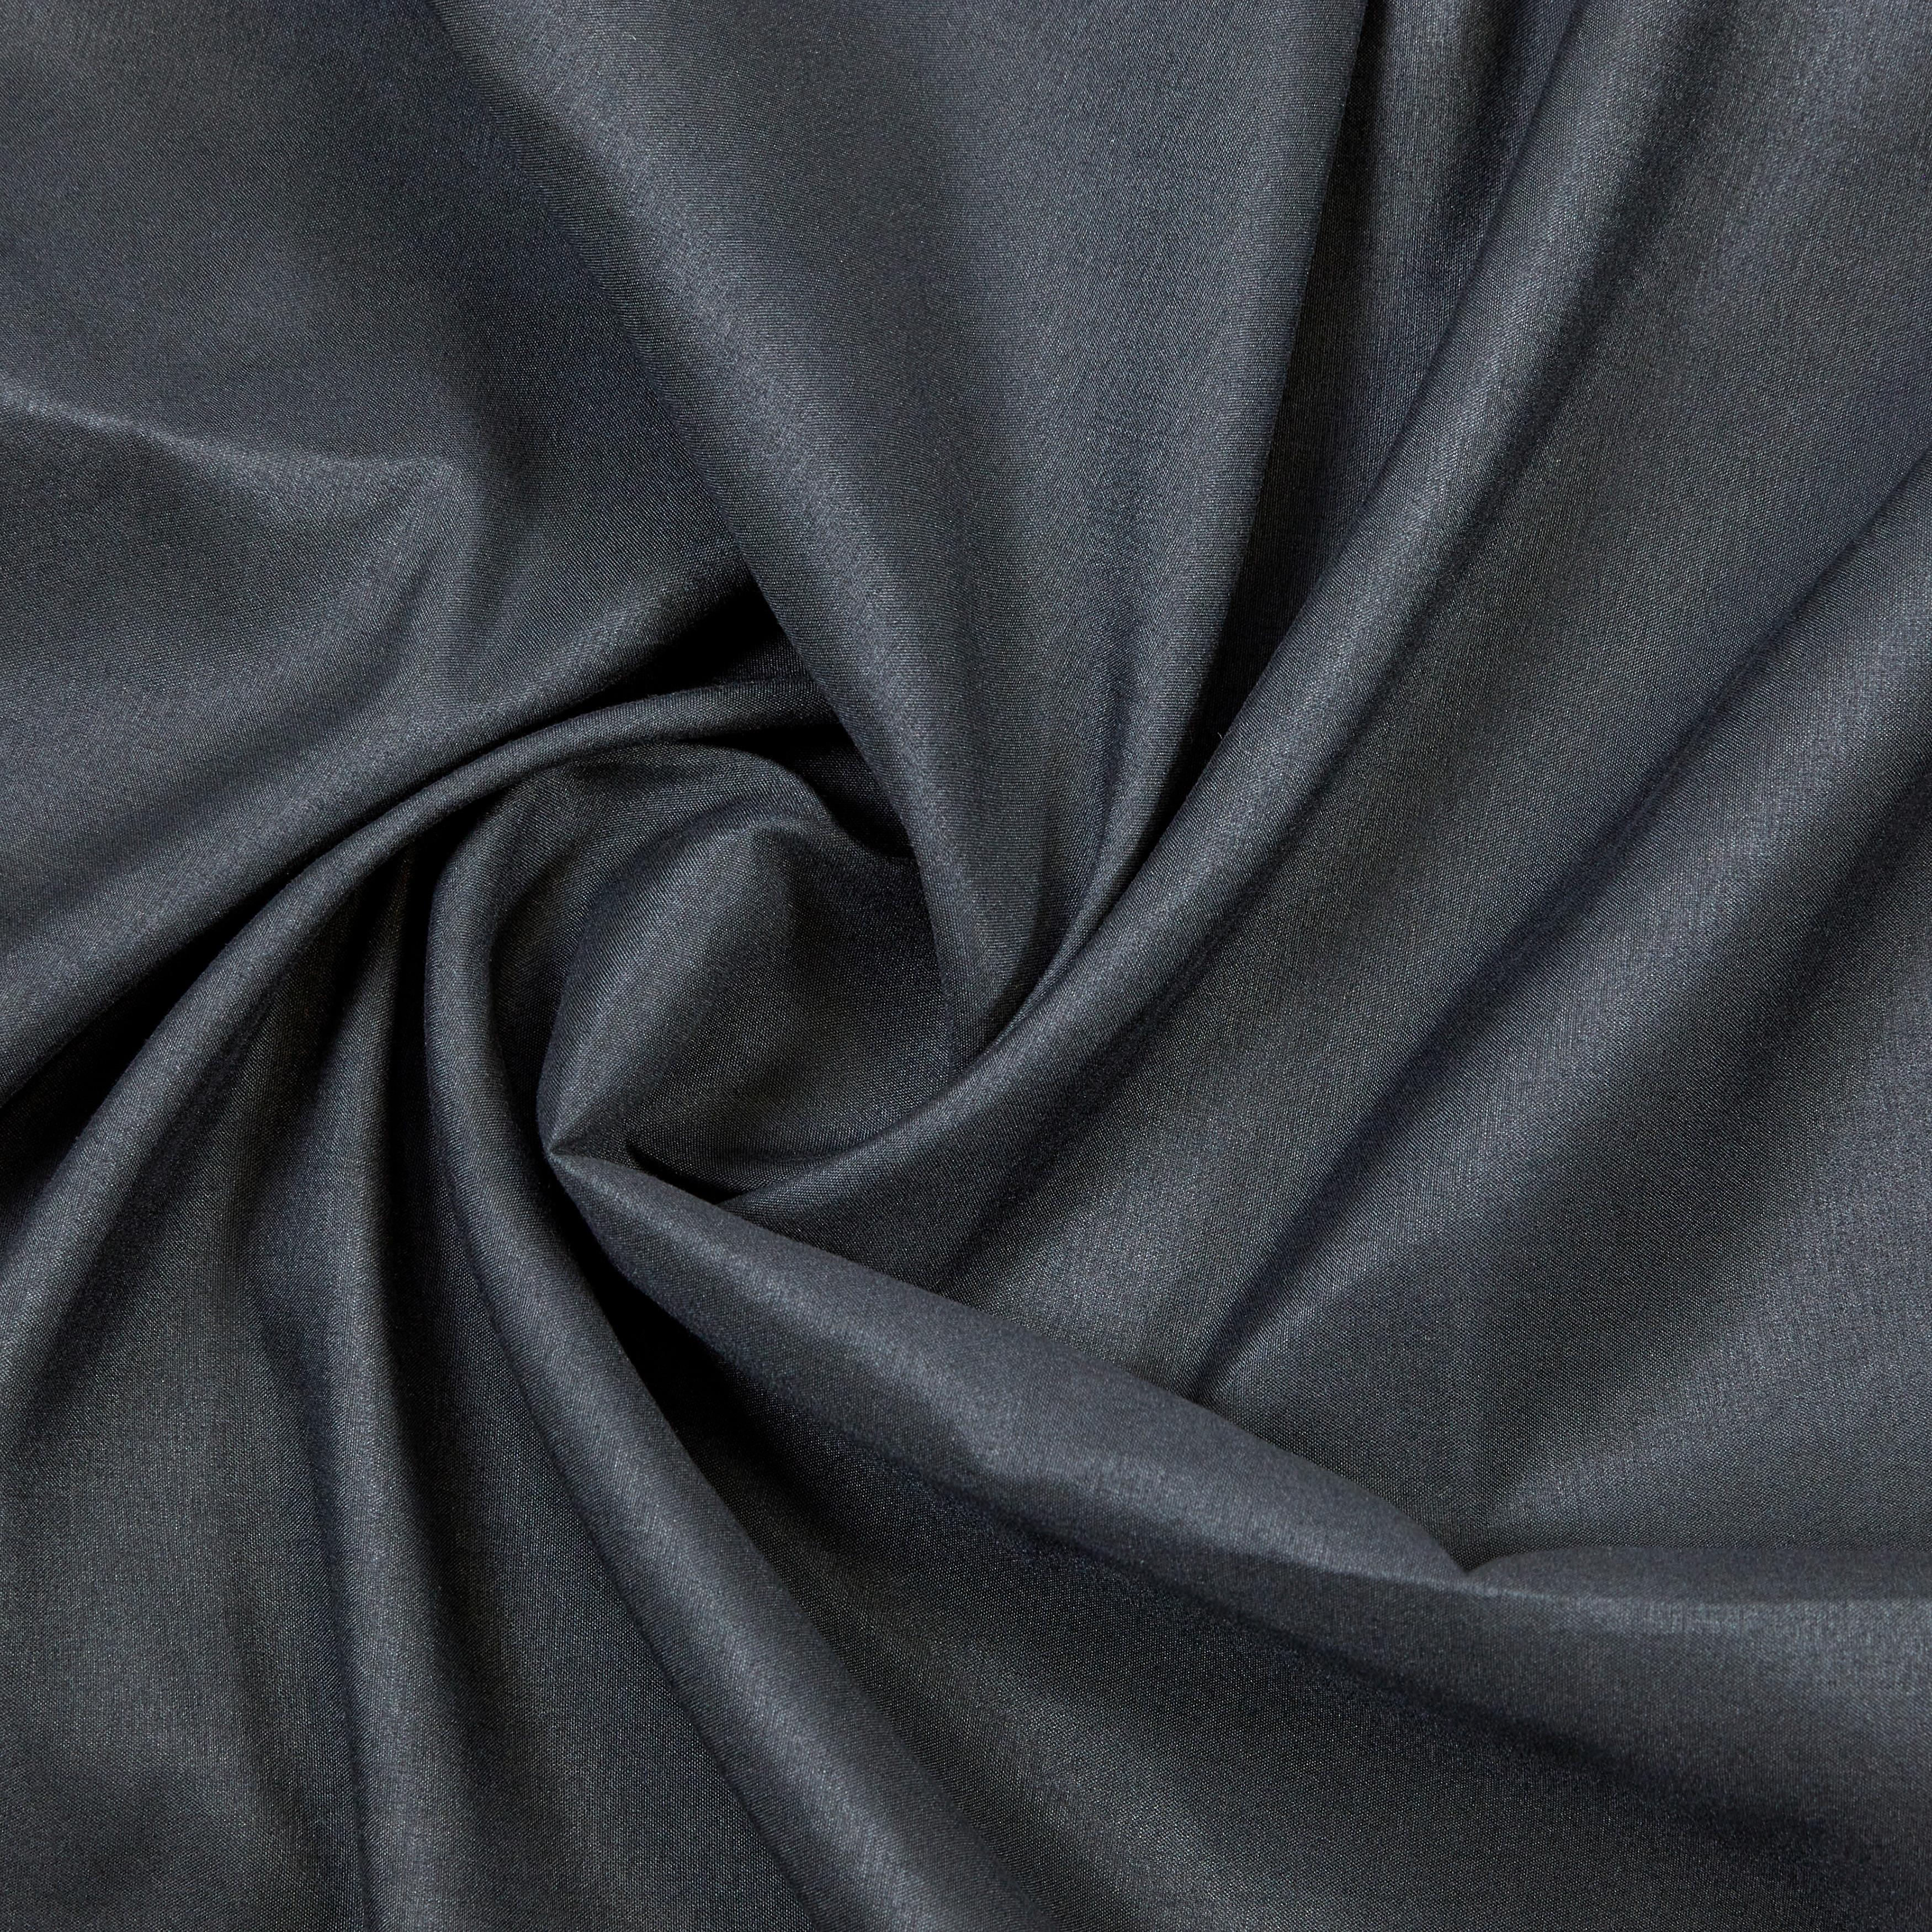 Závěs S Kroužky Abby, 140/235 Cm - černá, Konvenční, textil (140/235cm) - Modern Living